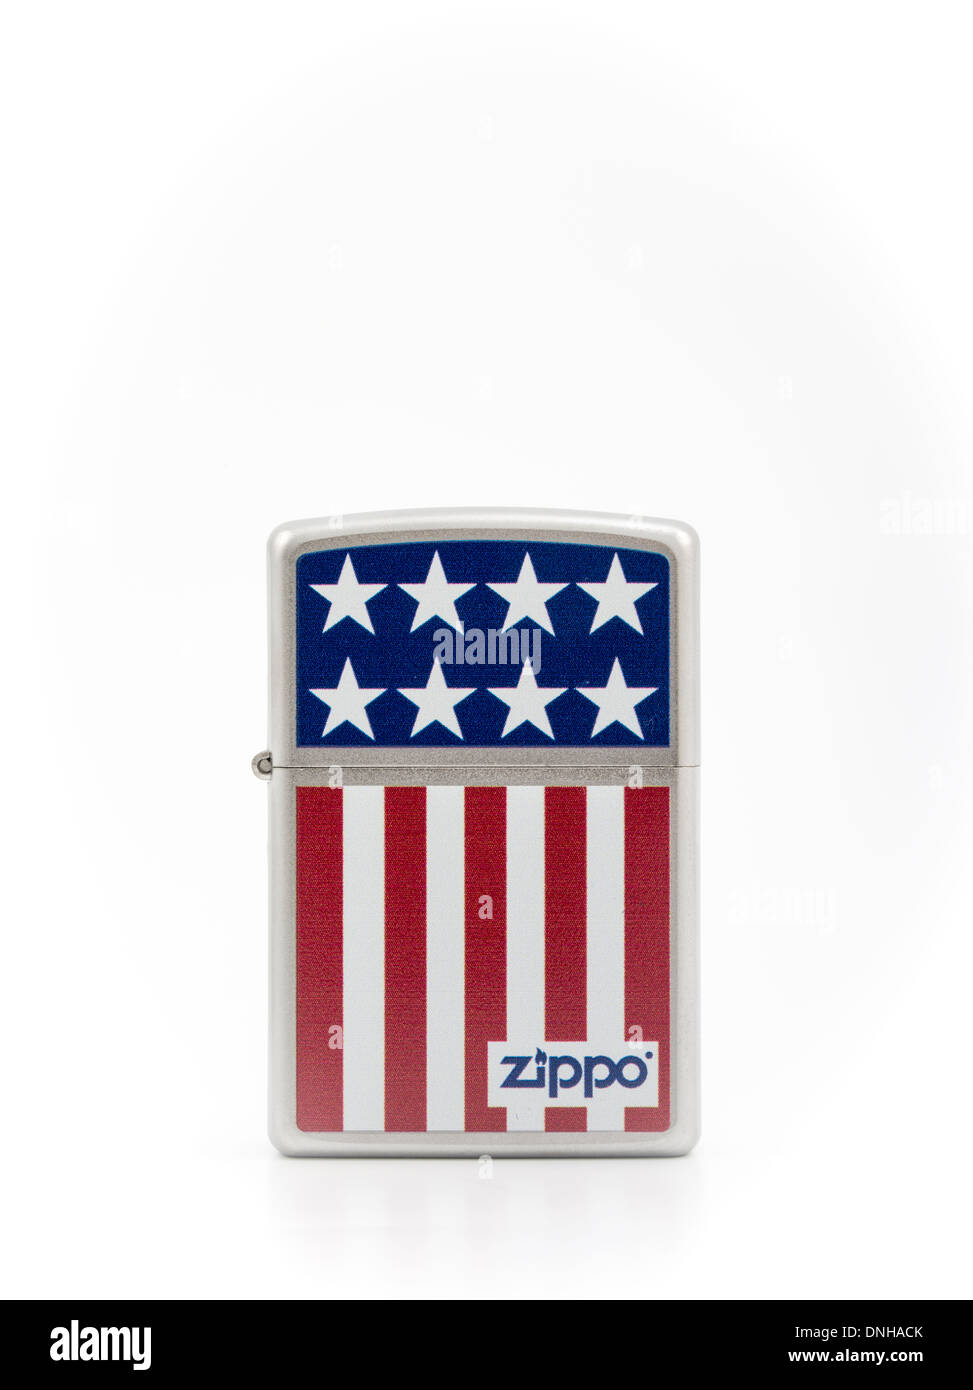 Zippo ikonischen Zigarettenanzünder gemacht in den USA Stars & Streifen-design Stockfoto